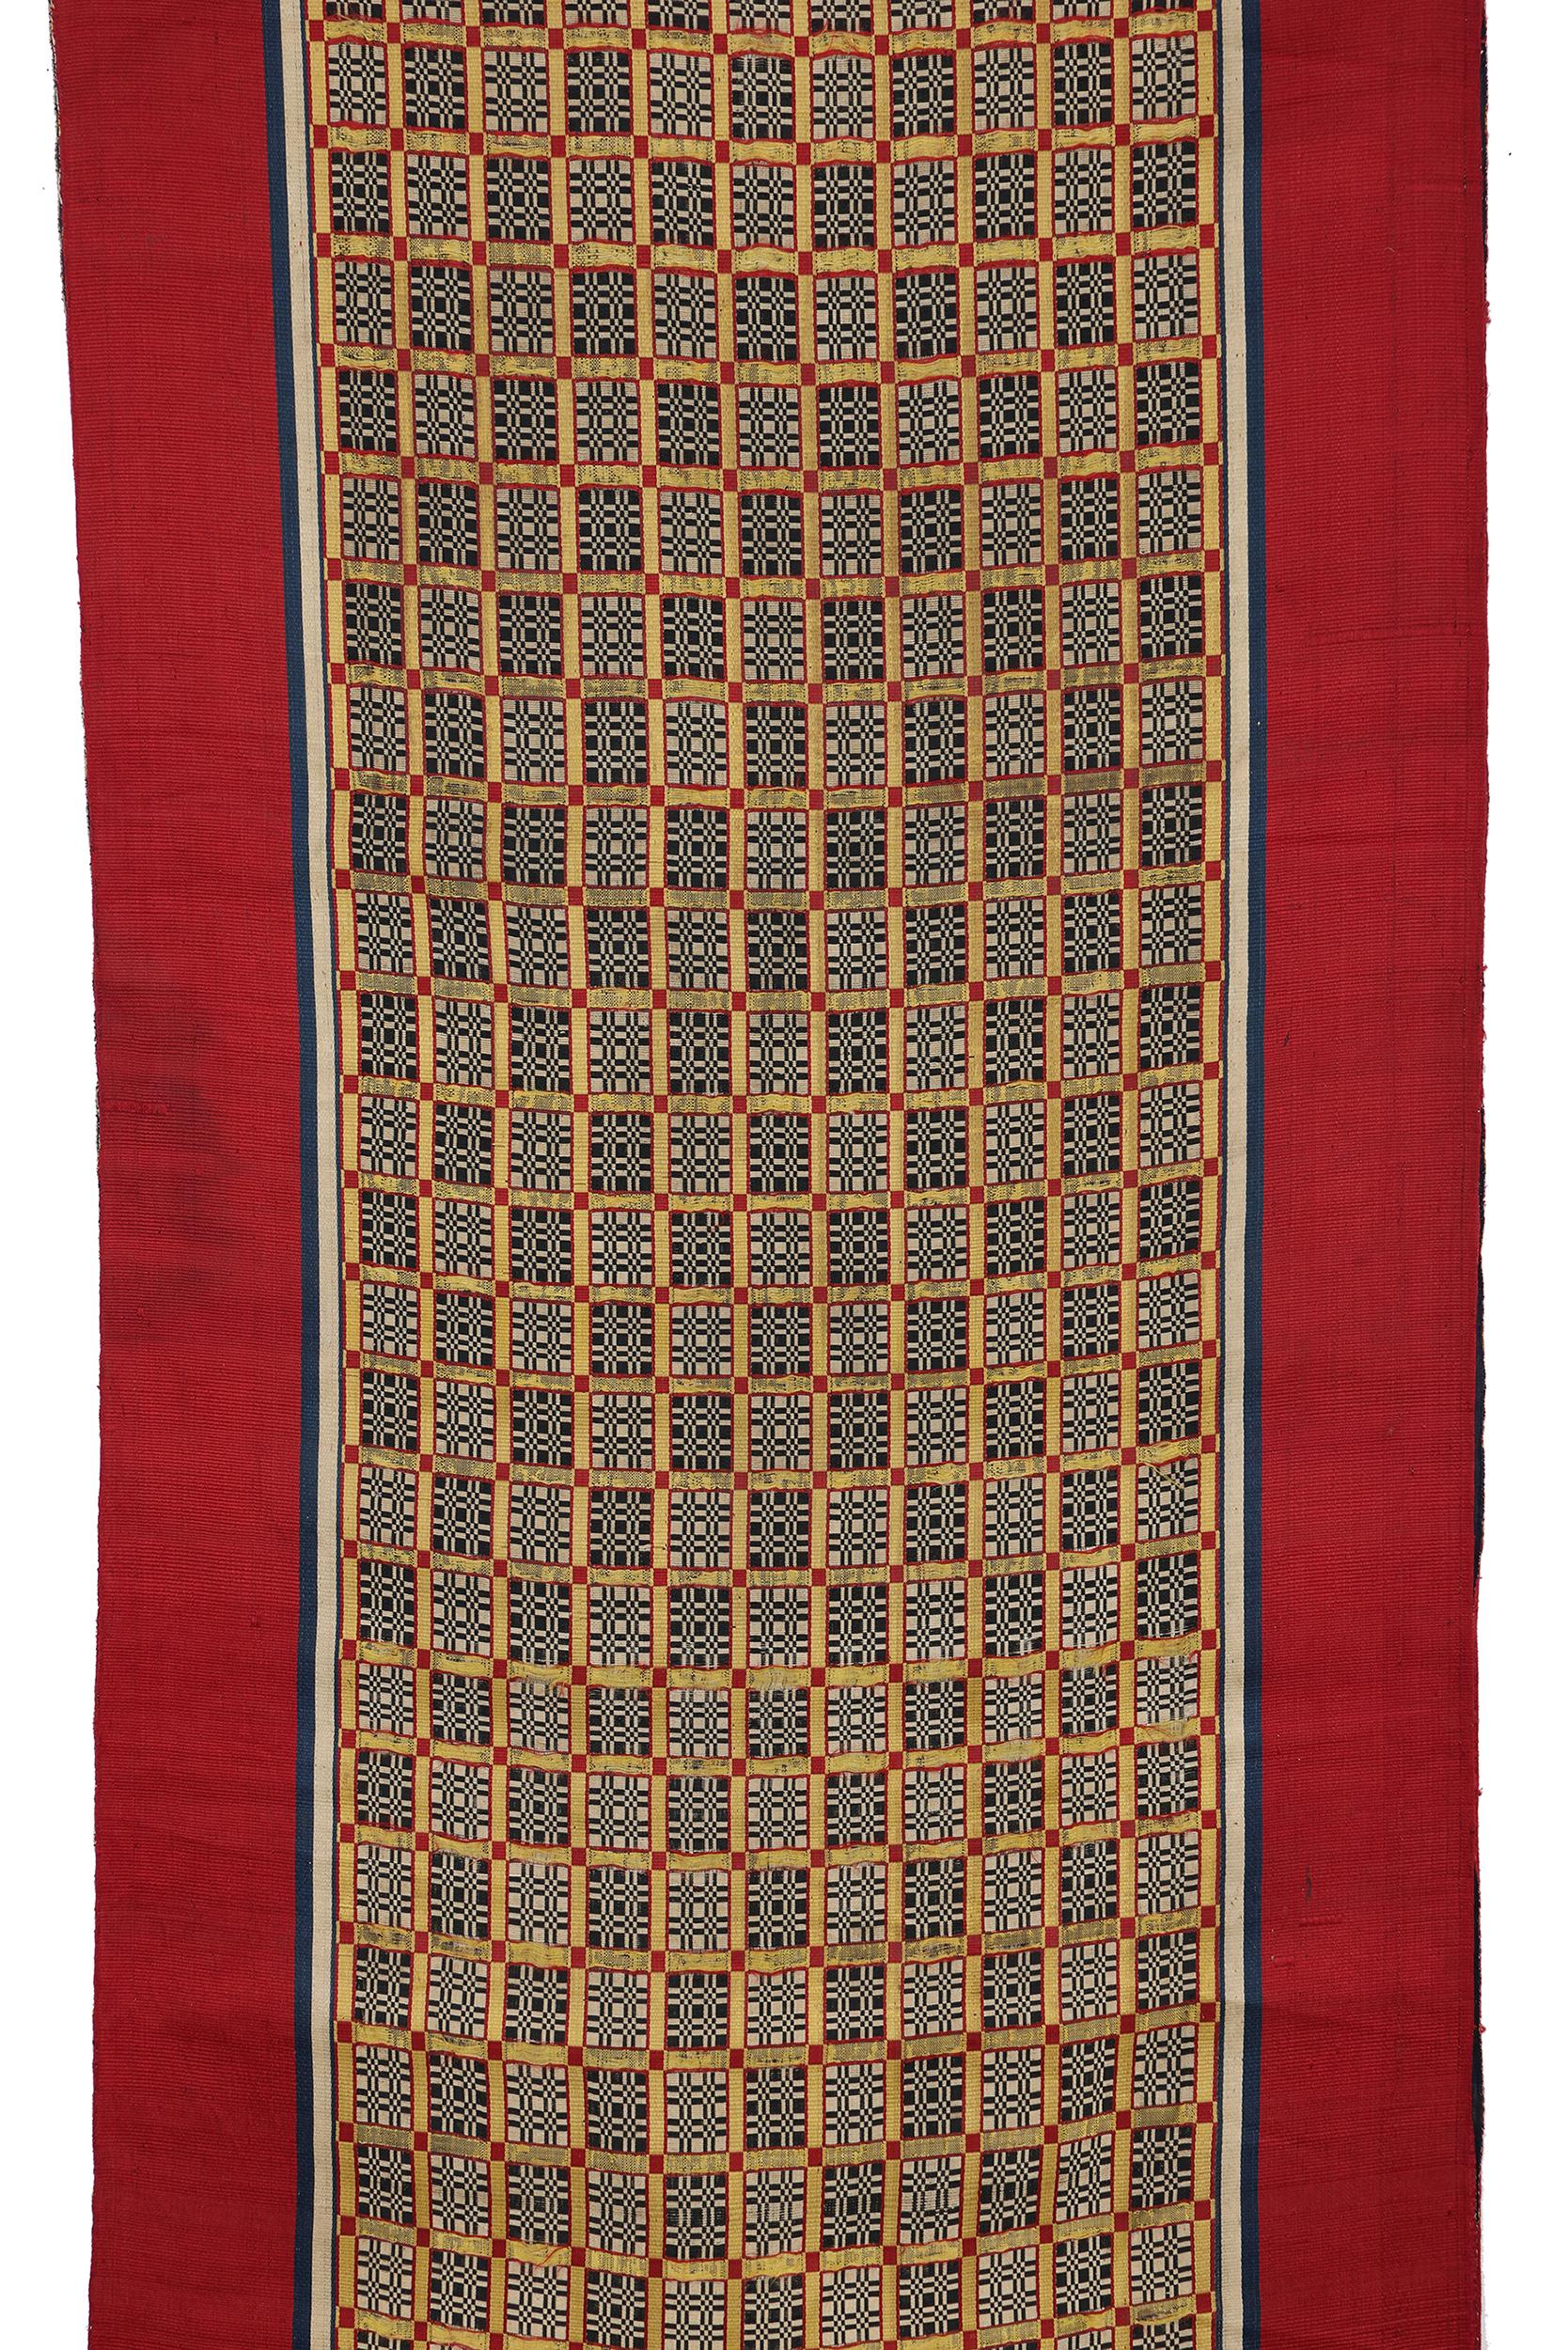 Ein Vorhang oder eine Gardine für eine Hochzeitsnische oder einen Empfangsraum
Tetouan, Marokko
19. Jahrhundert
Seidenstreifengewebe mit doppeltem Bindungsmuster
129 x 24 Zoll (61 x 328 cm)

Dieses luxuriöse, schimmernde Tuch gehört zu einem Satz